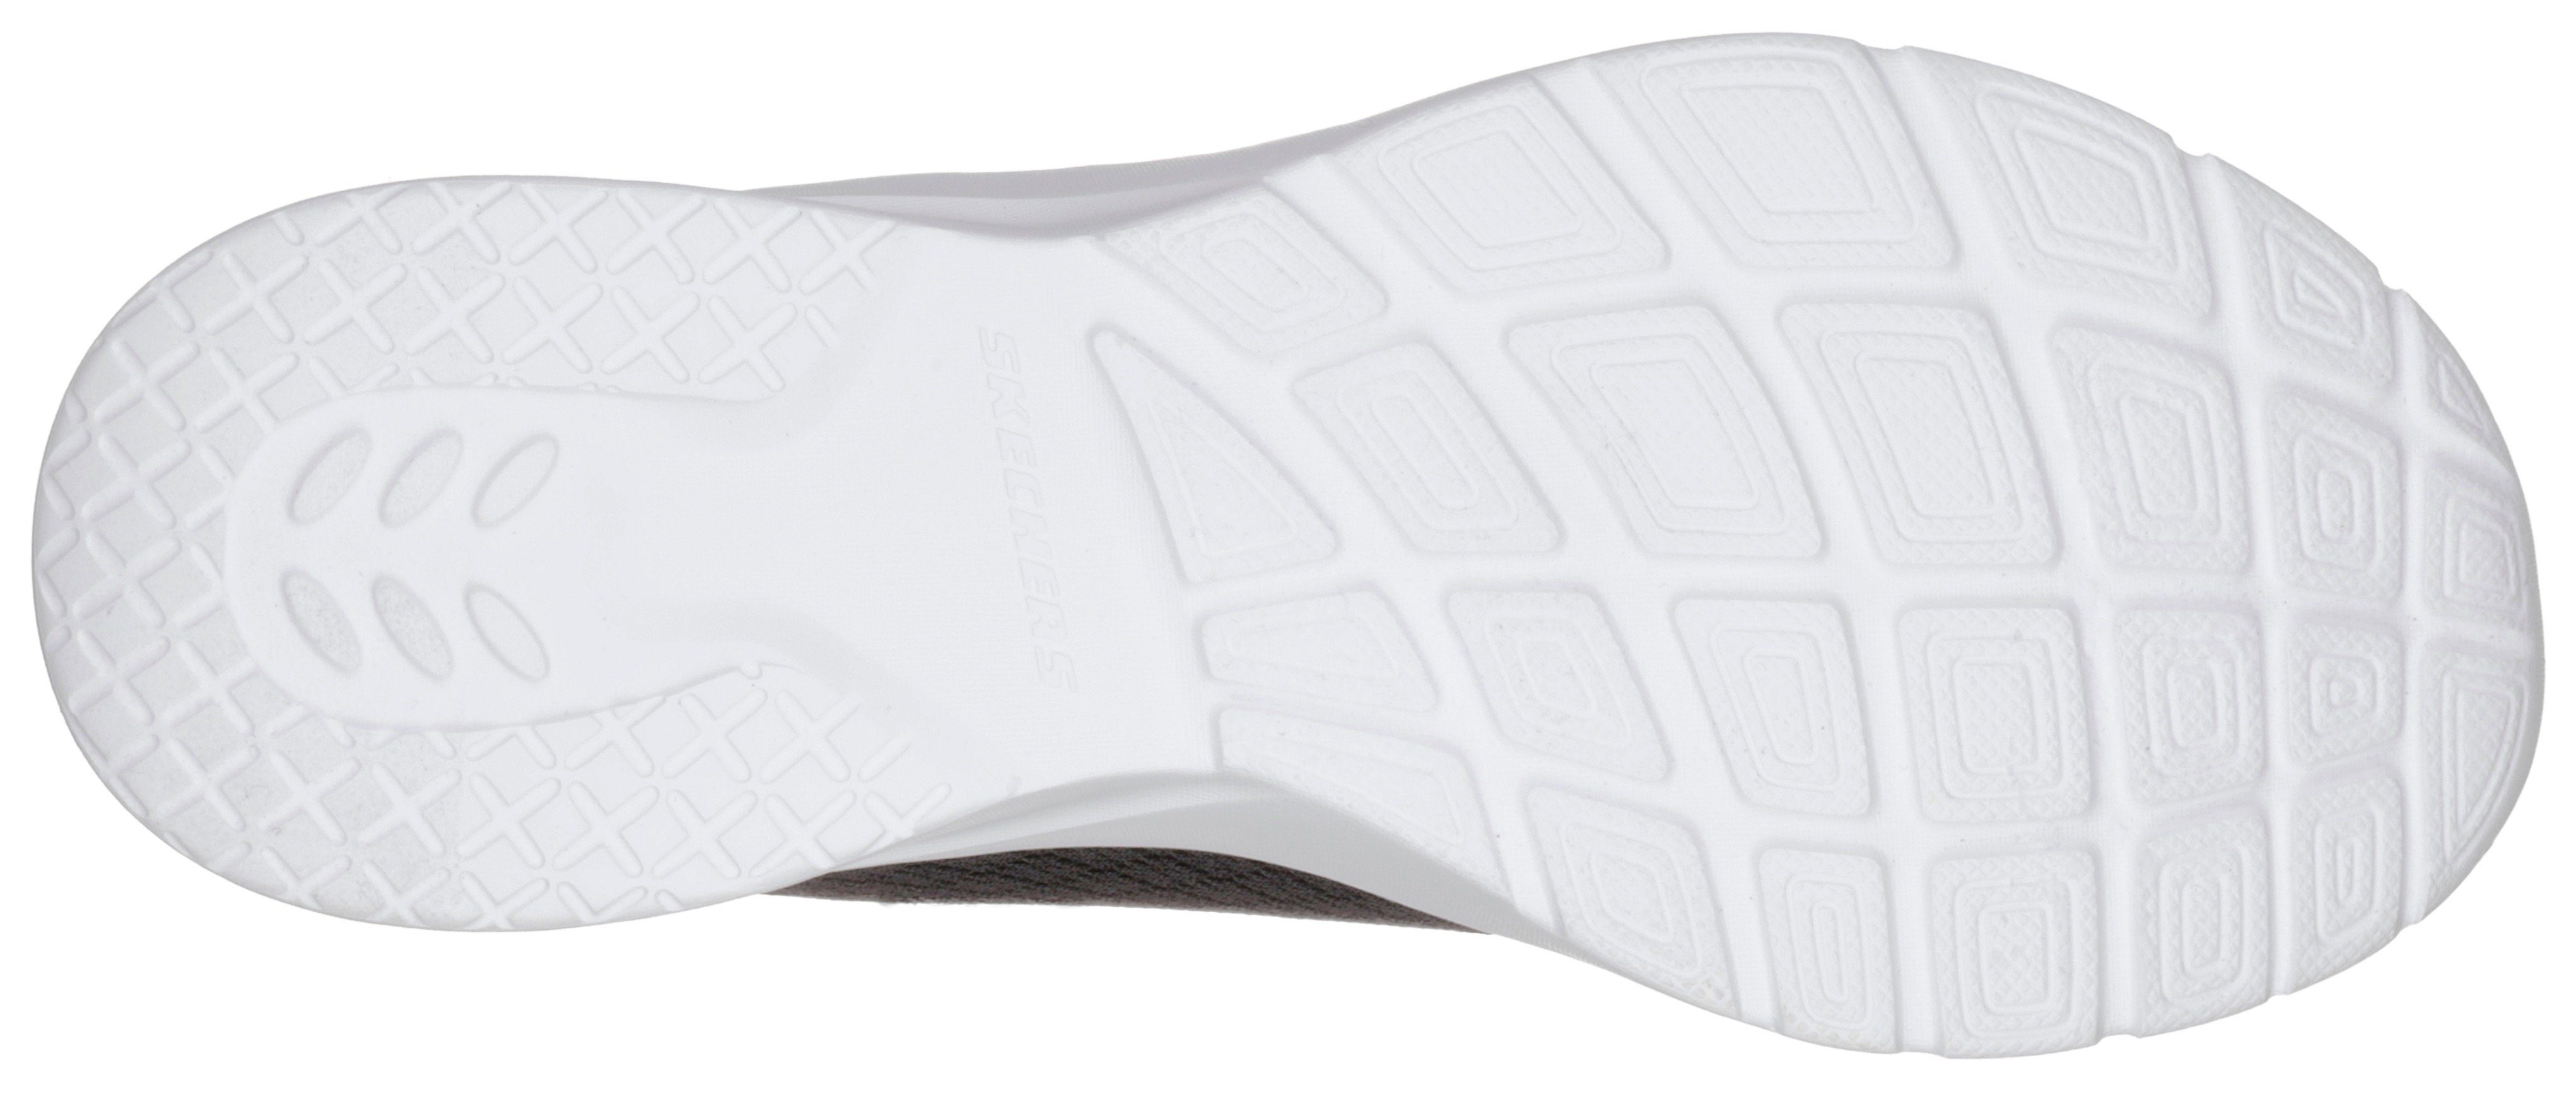 Skechers 2.0 Eye mit Foam Eye Dynamight to - Sneaker Memory schwarz-weiß